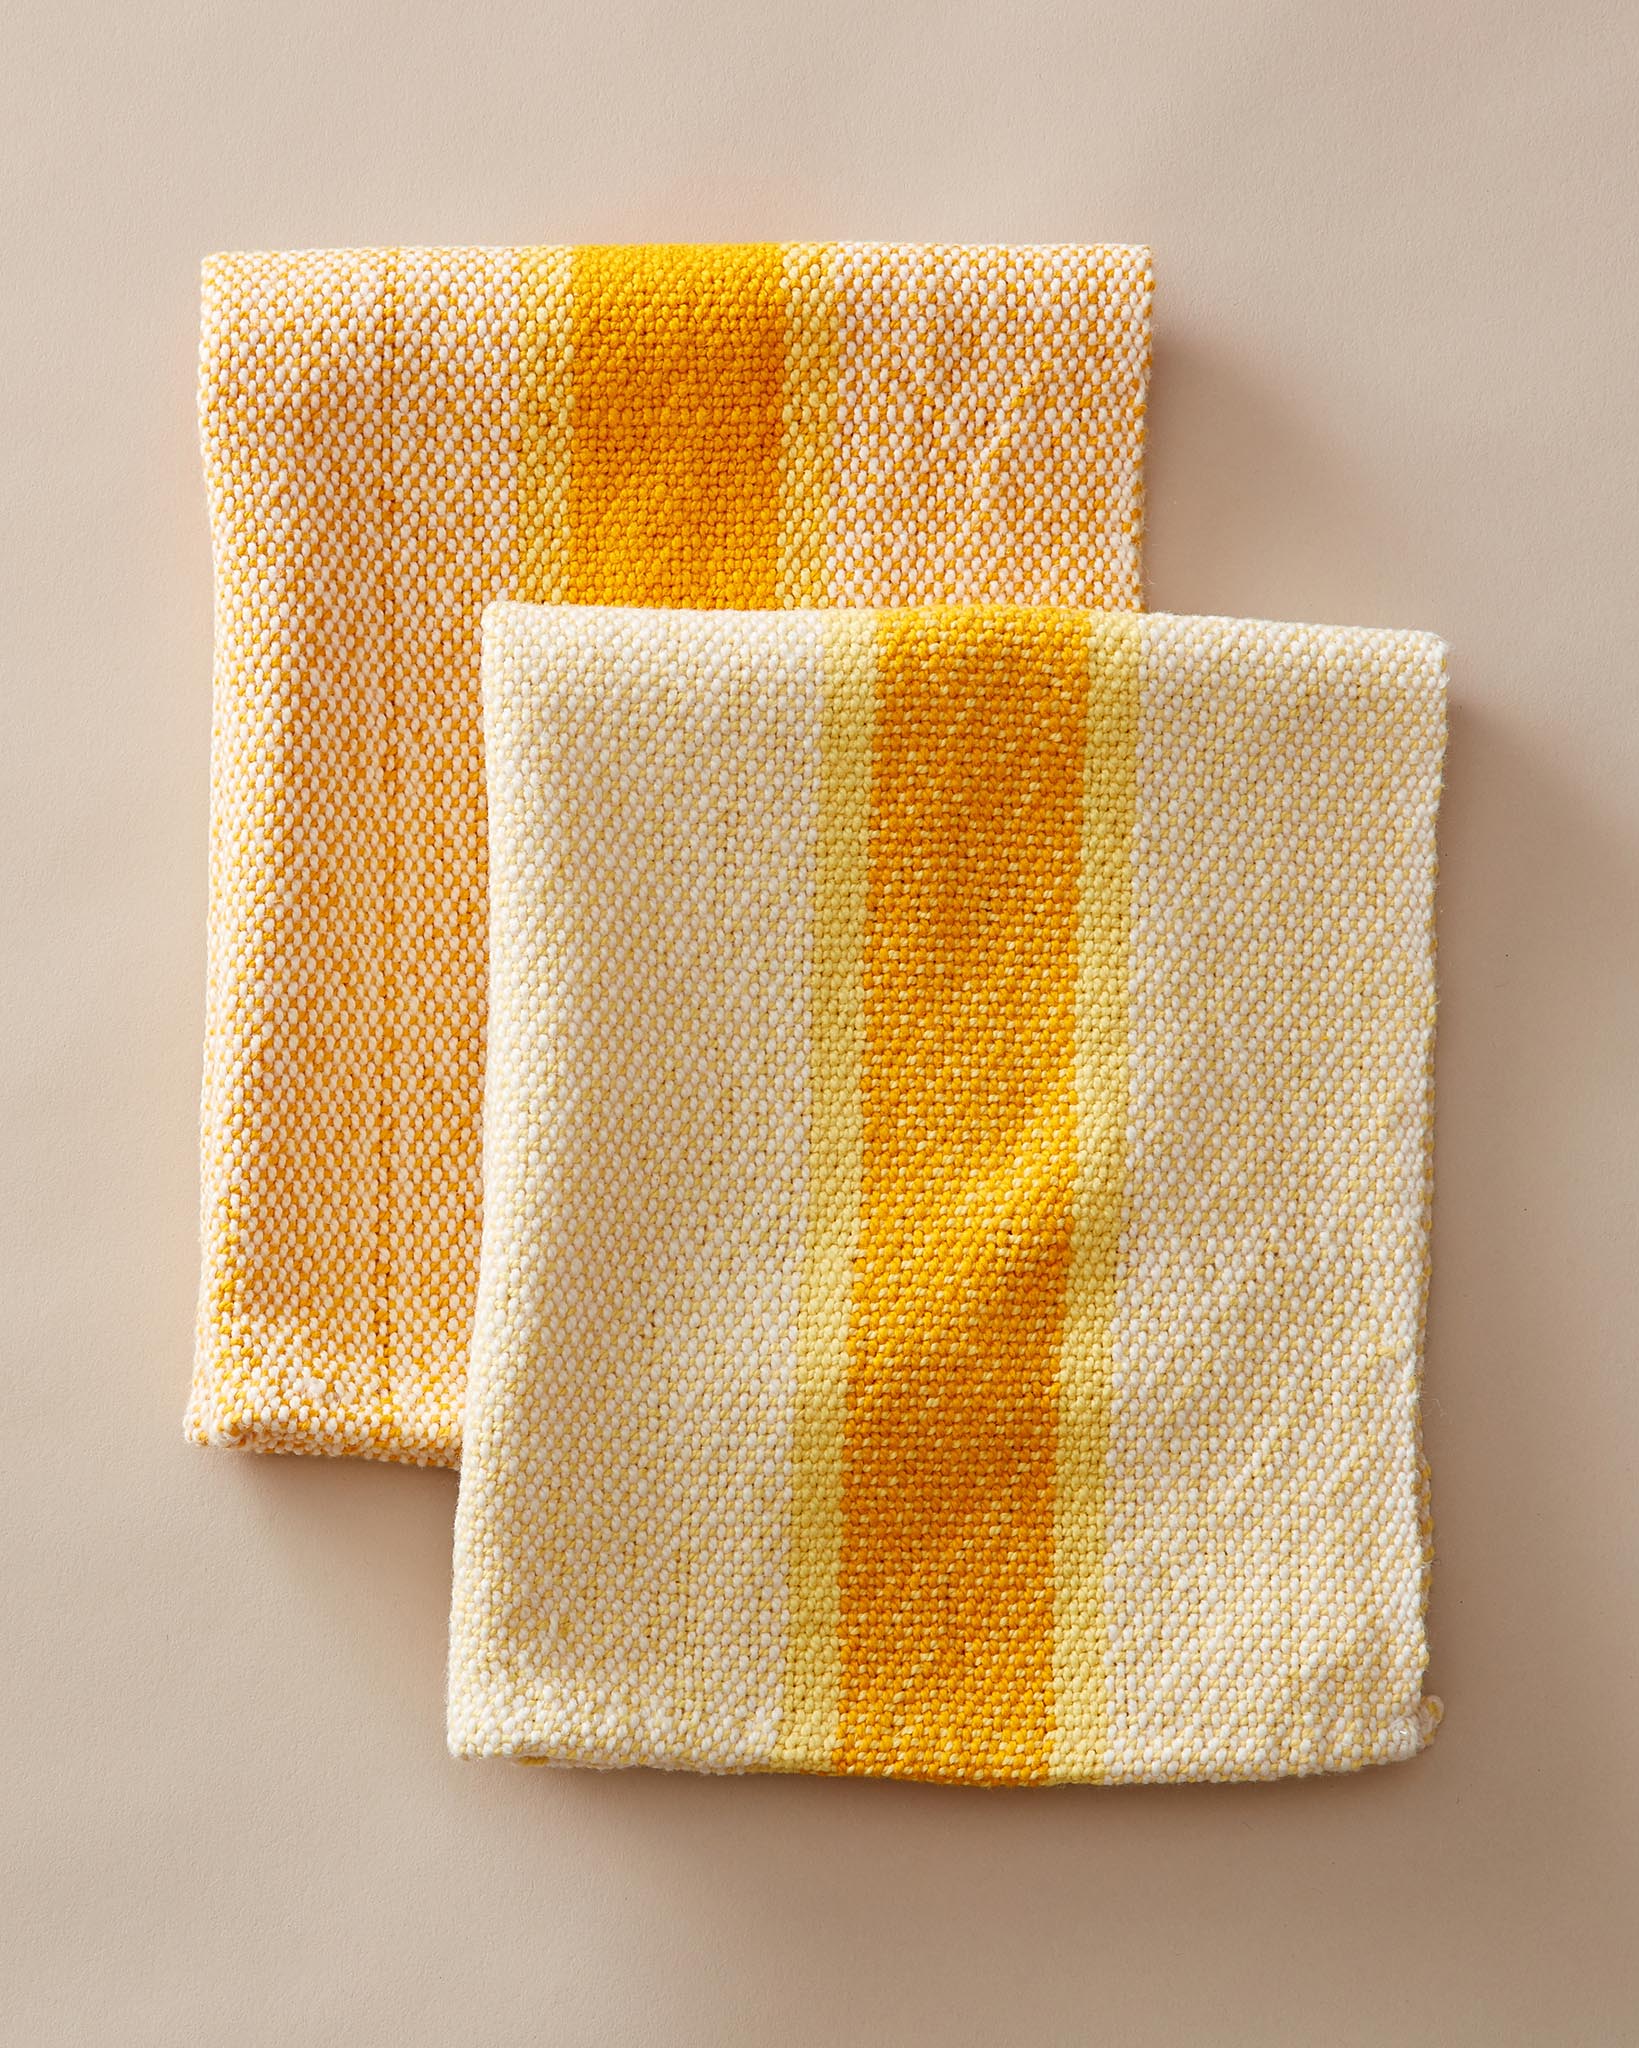 Pattern Dish Towels